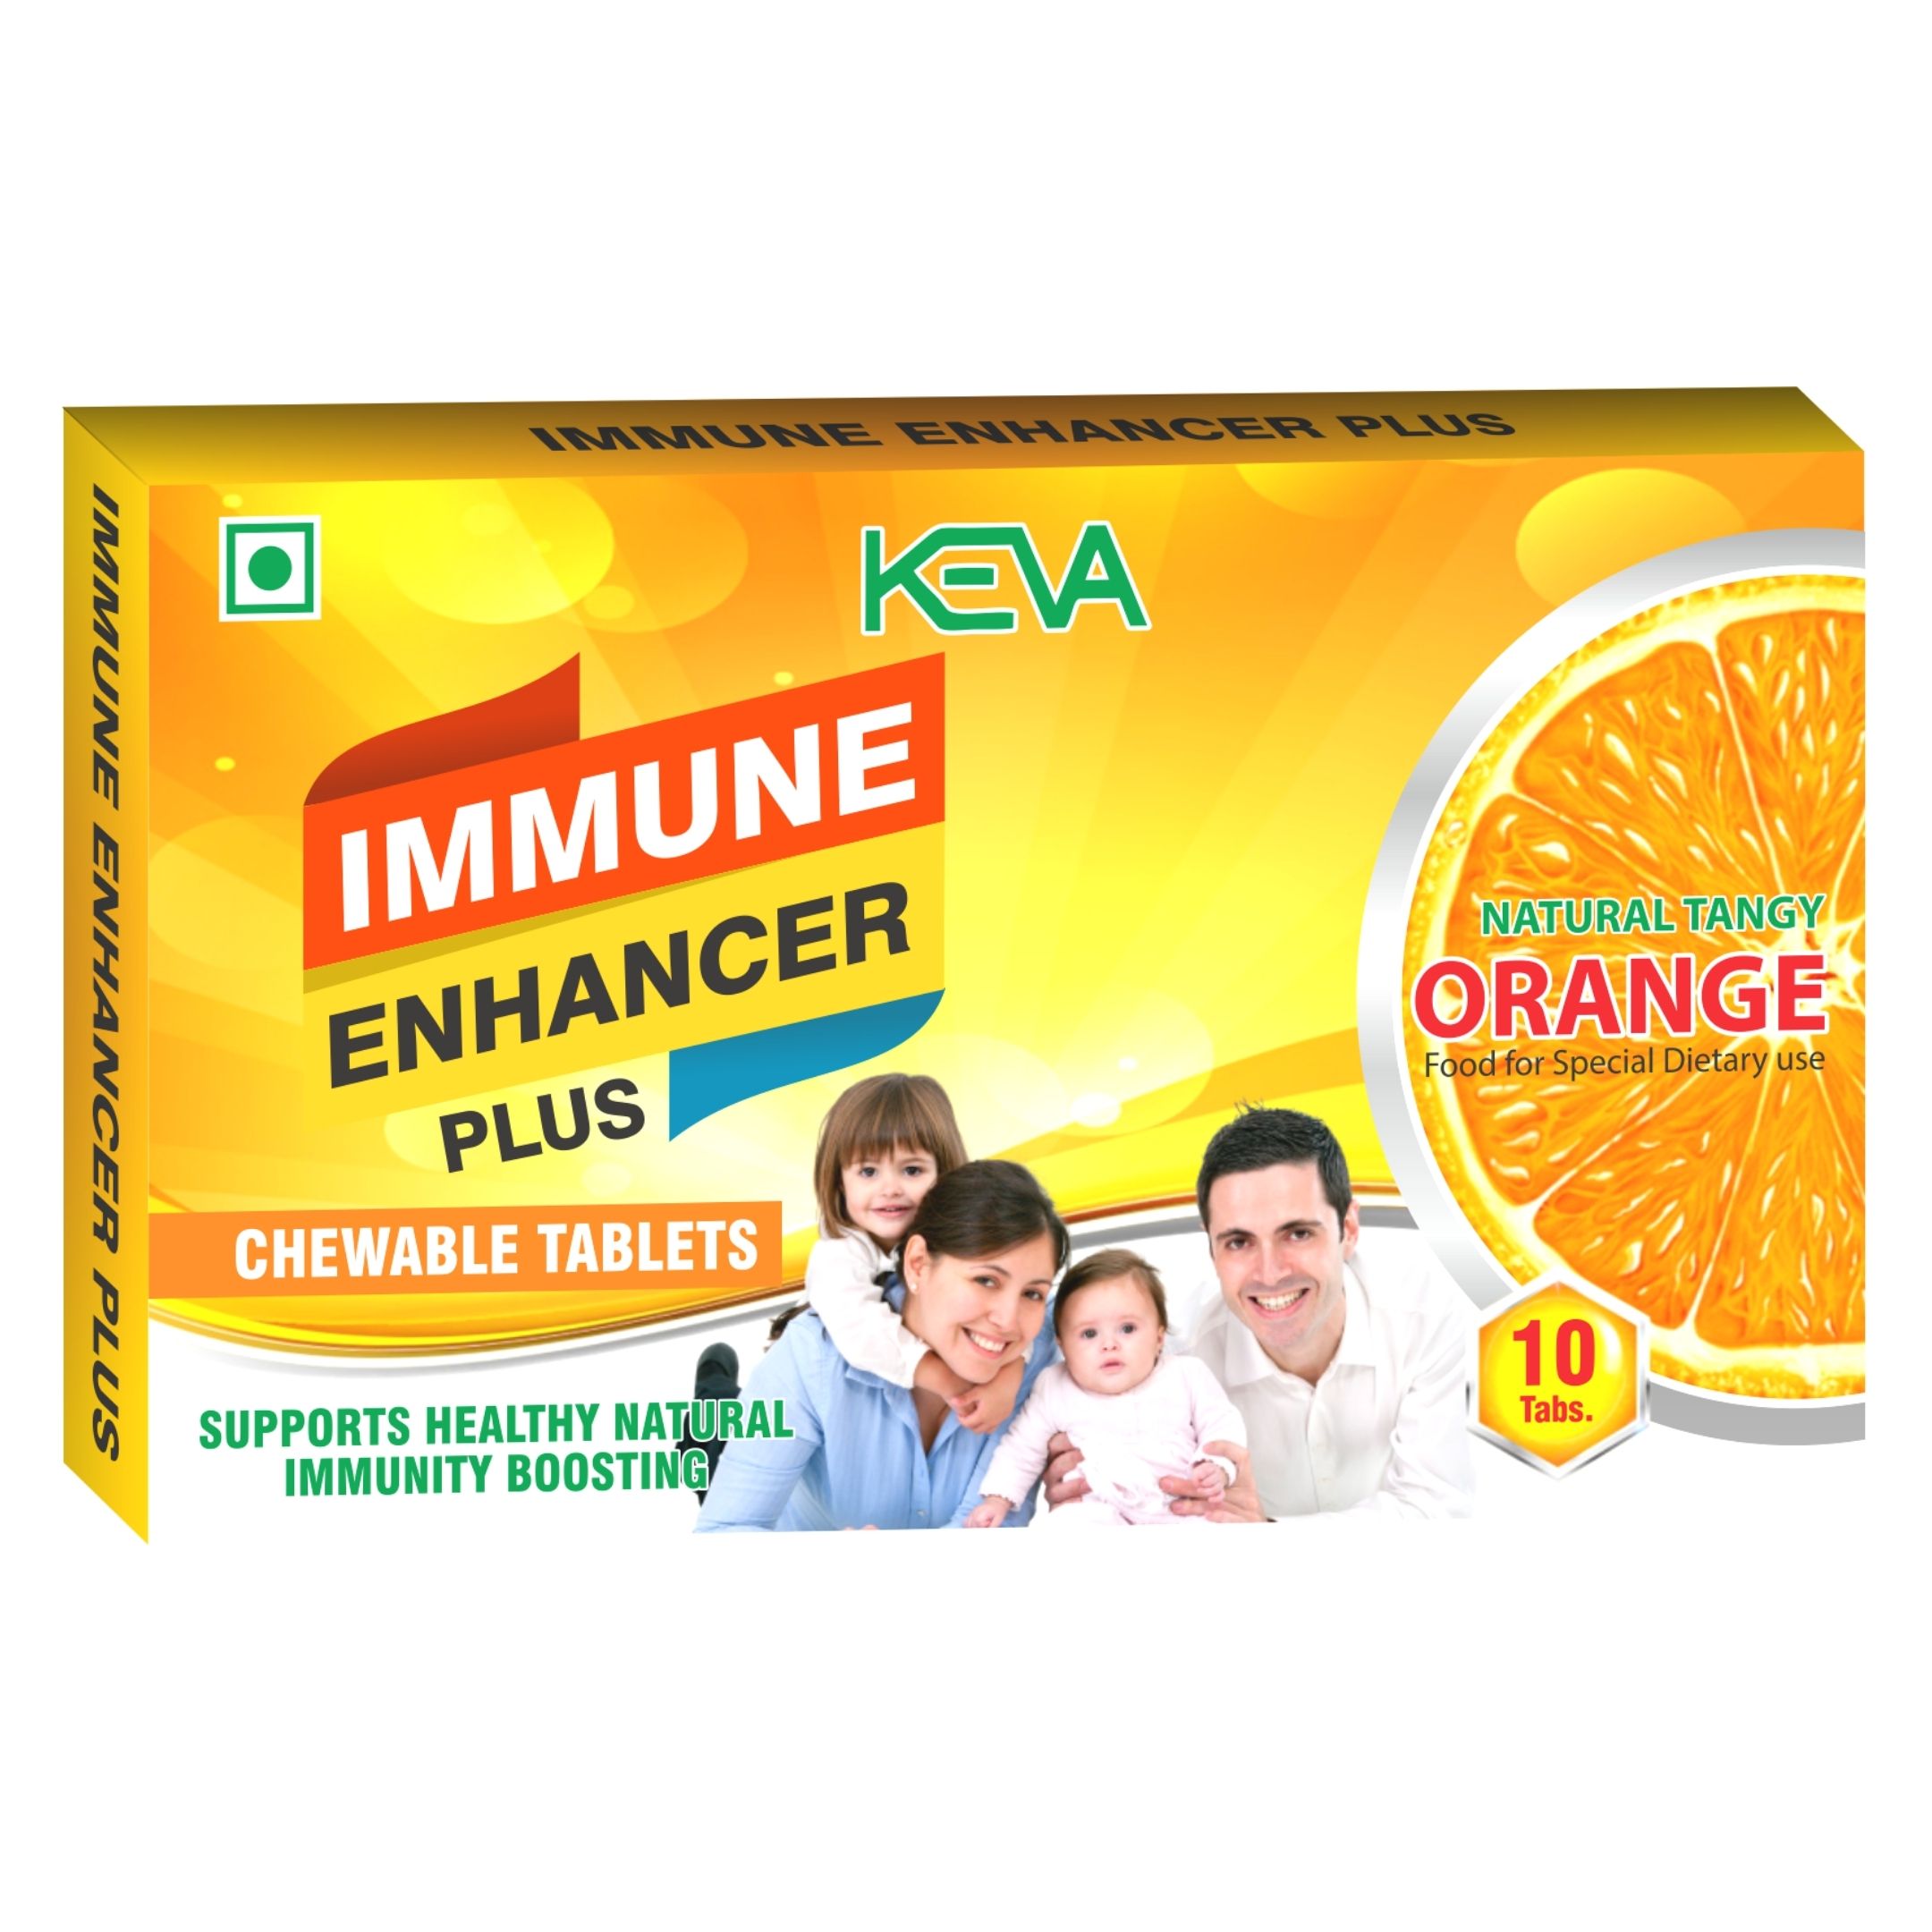 Immune Enhancer